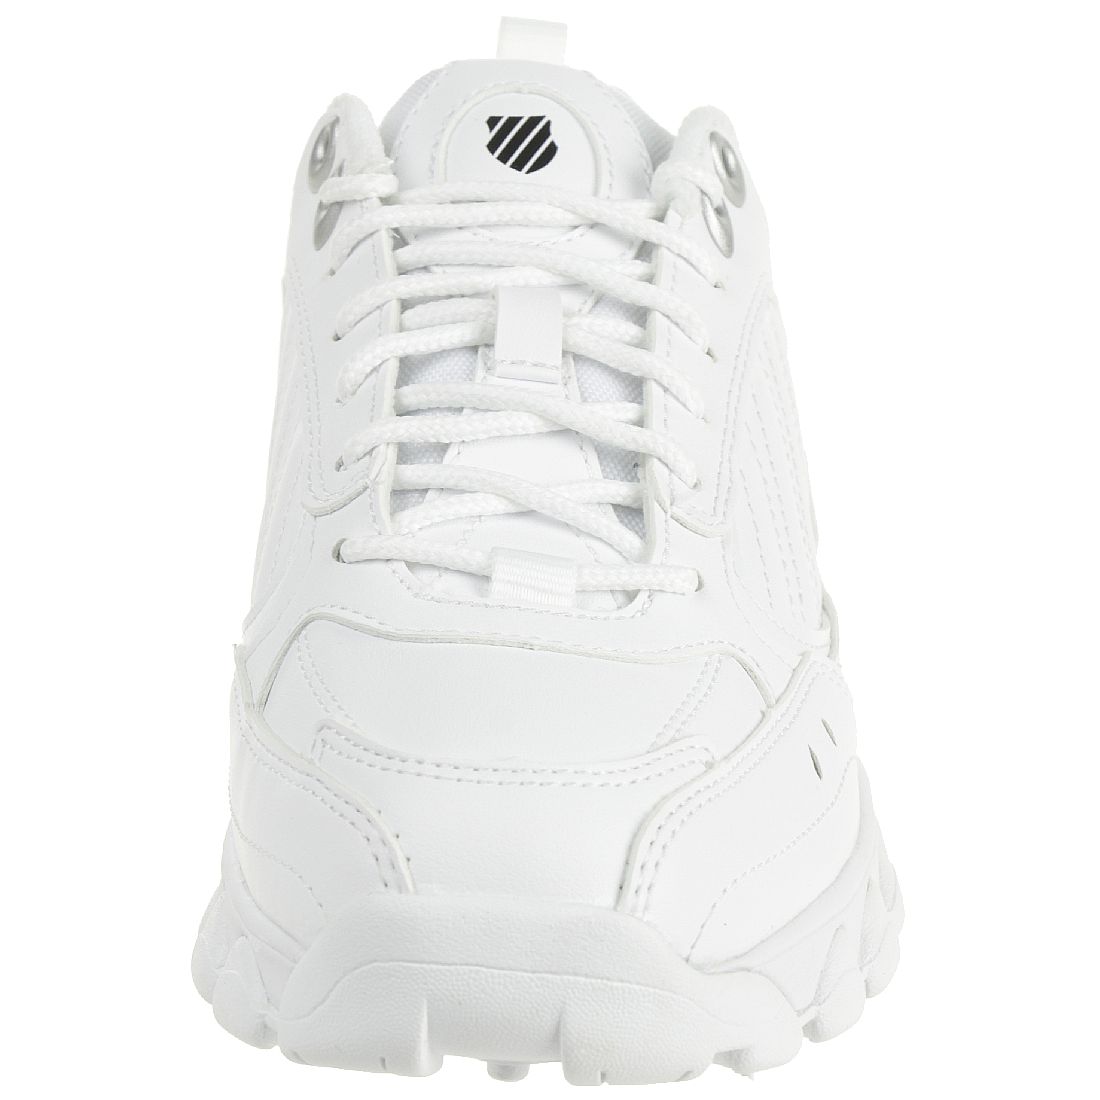 K-SWISS HS329 Sneaker Schuhe Damen 96354-193-M weiß